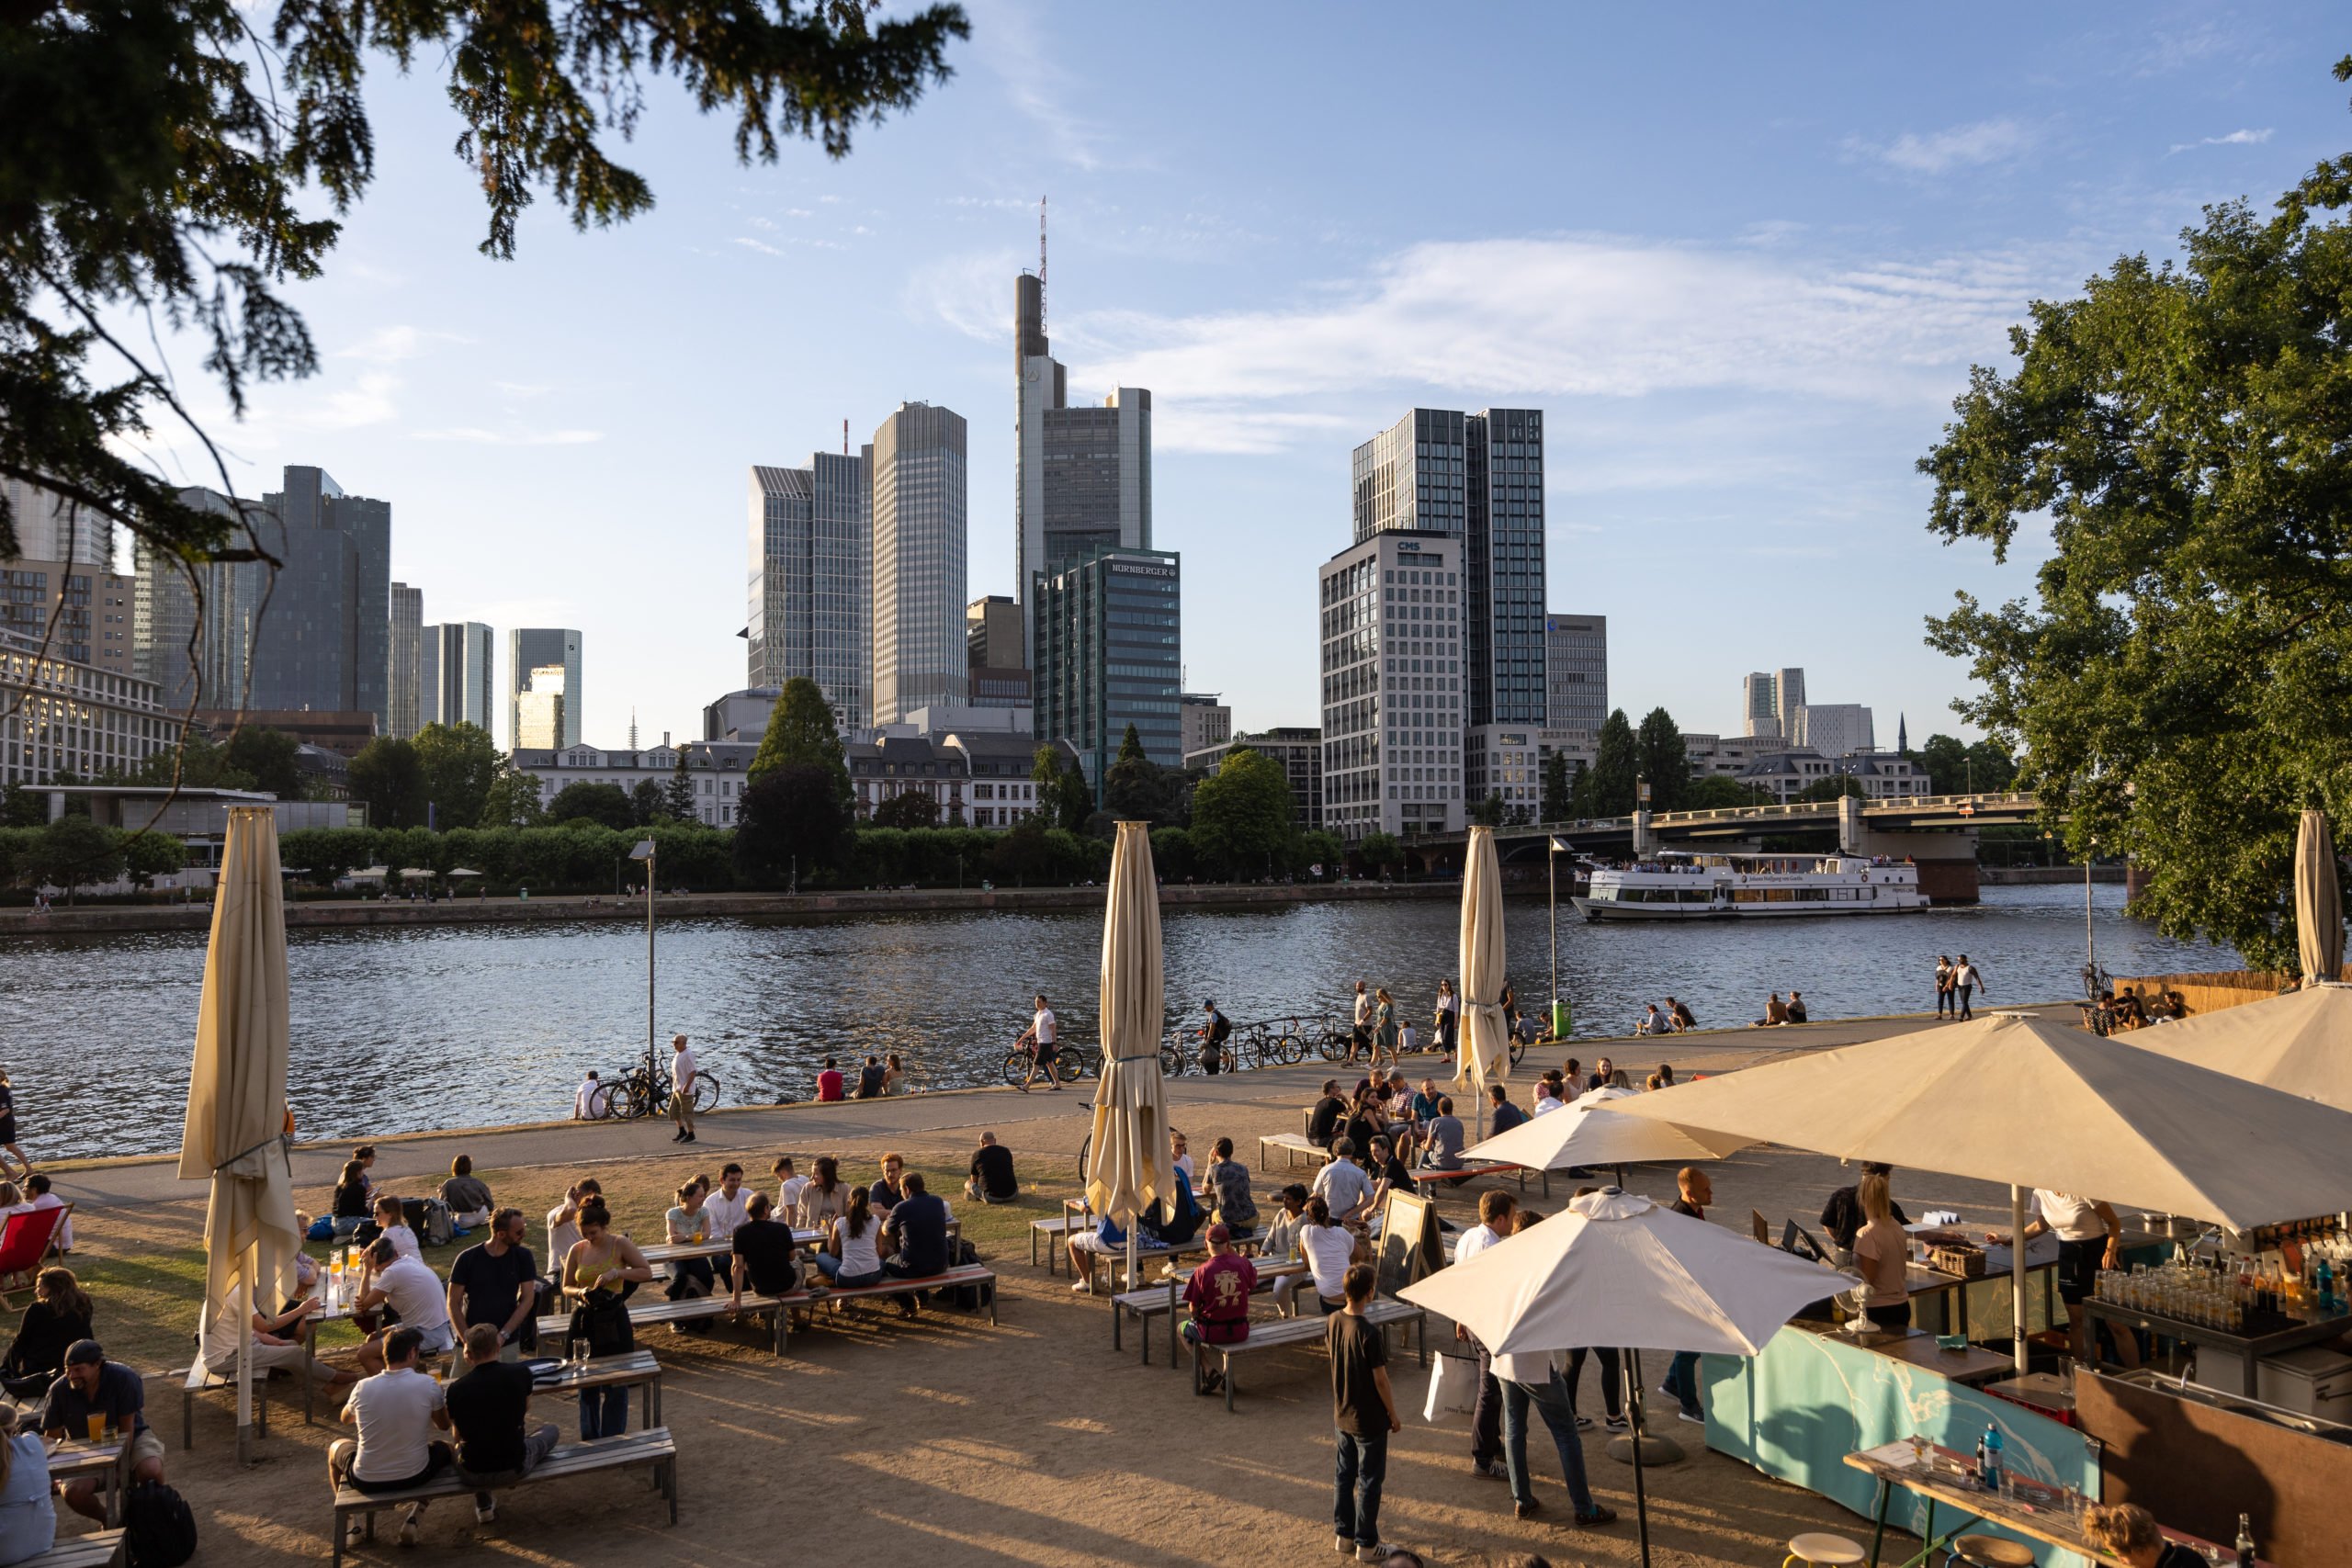 Apakah Frankfurt tempat yang baik bagi orang asing untuk tinggal?